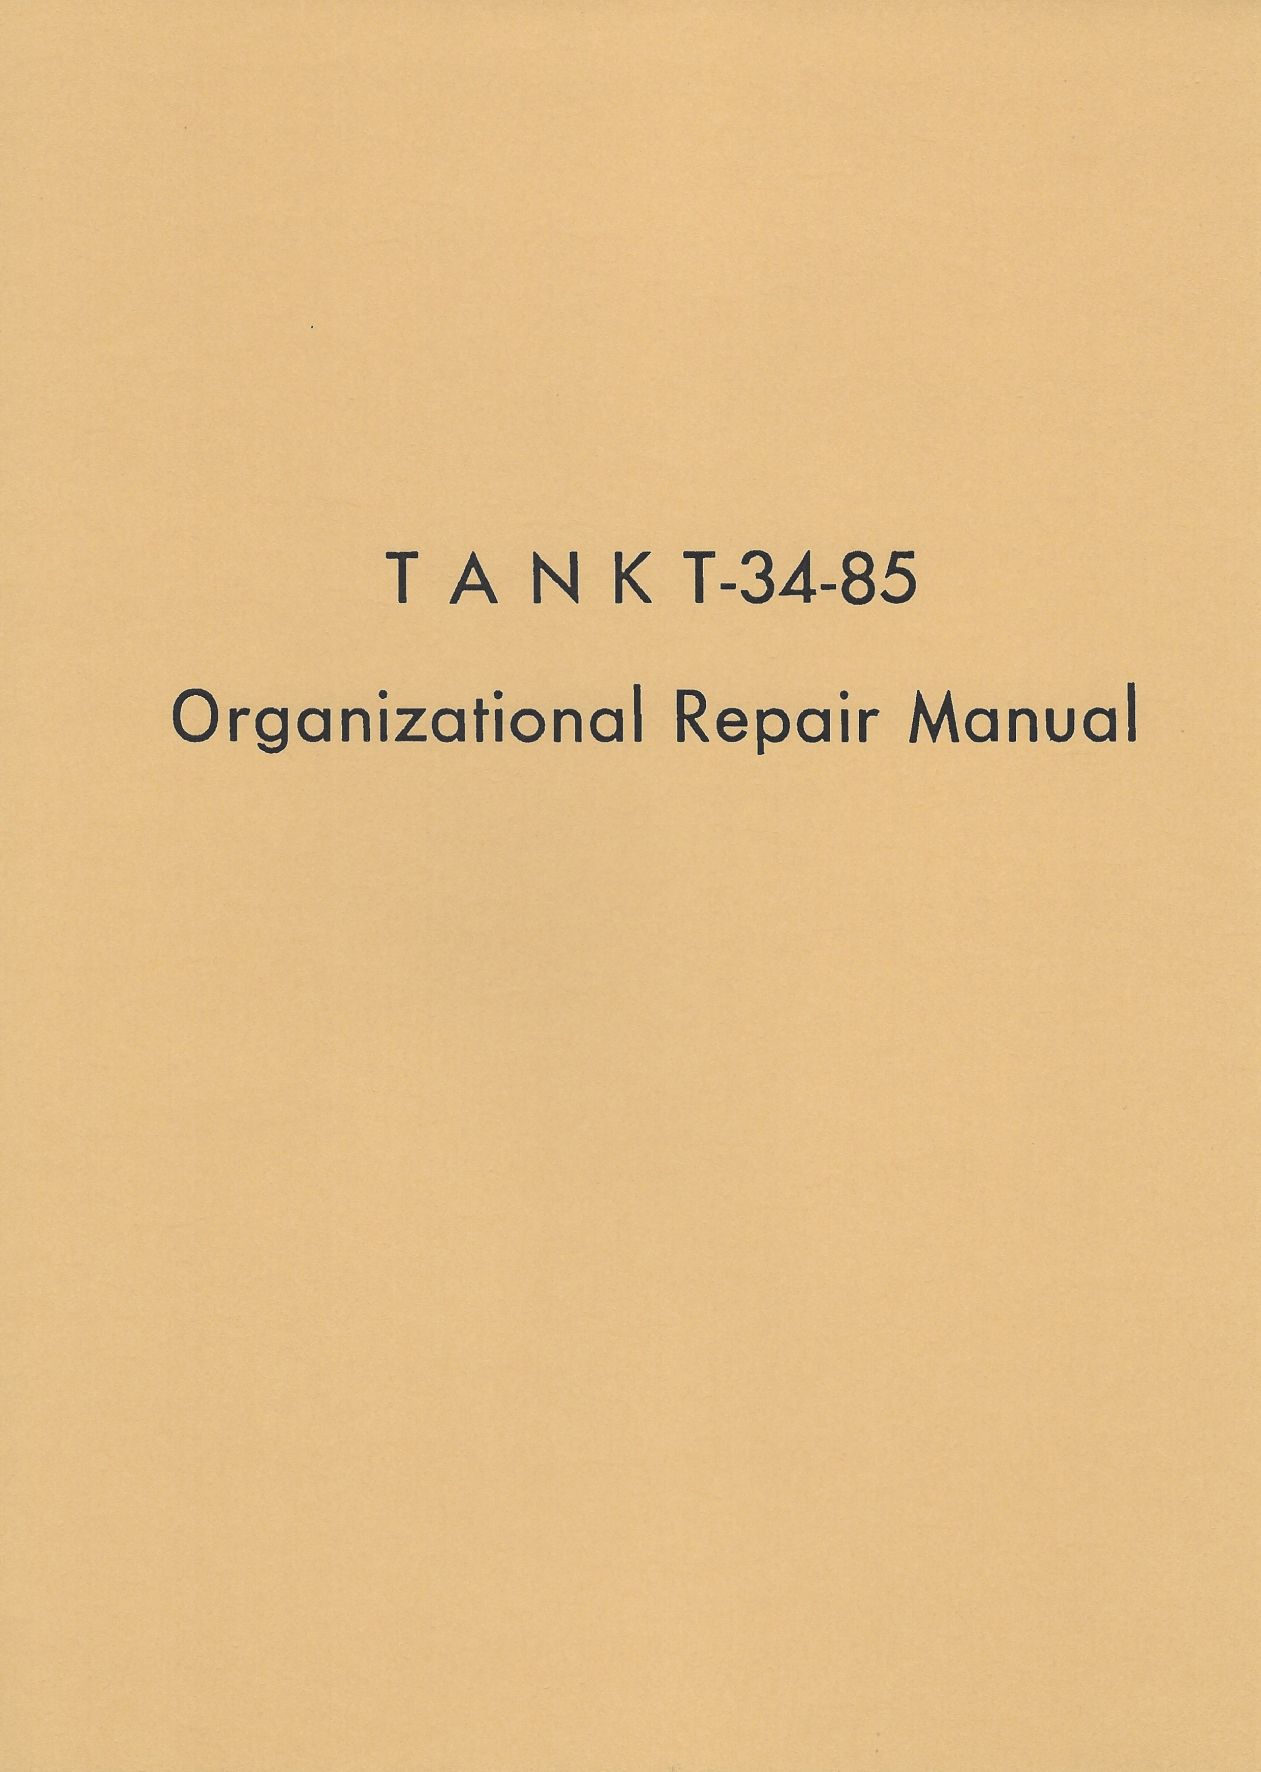 TANK T-34-85 ORGANIZATIONAL REPAIR MANUAL